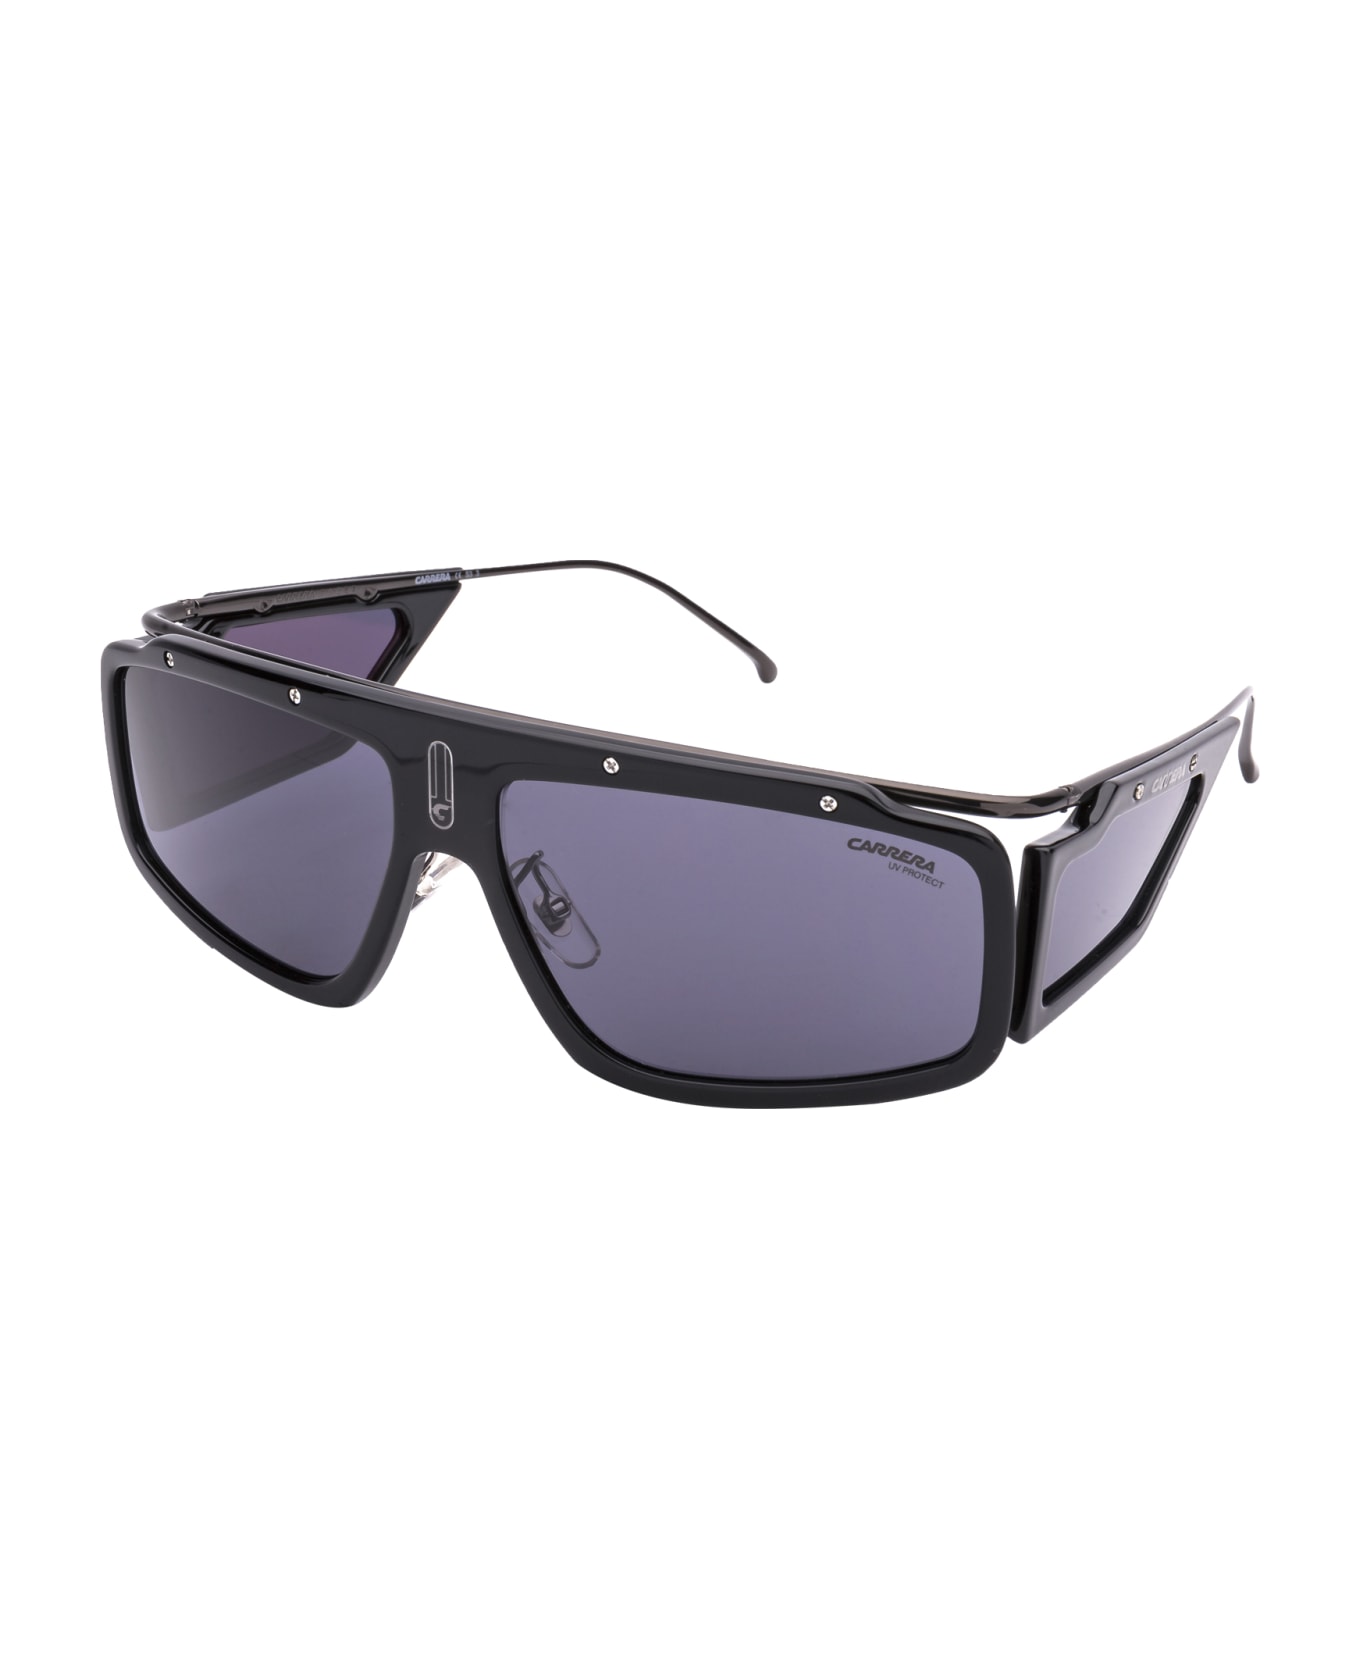 Carrera Facer Sunglasses - 8072K BLACK サングラス